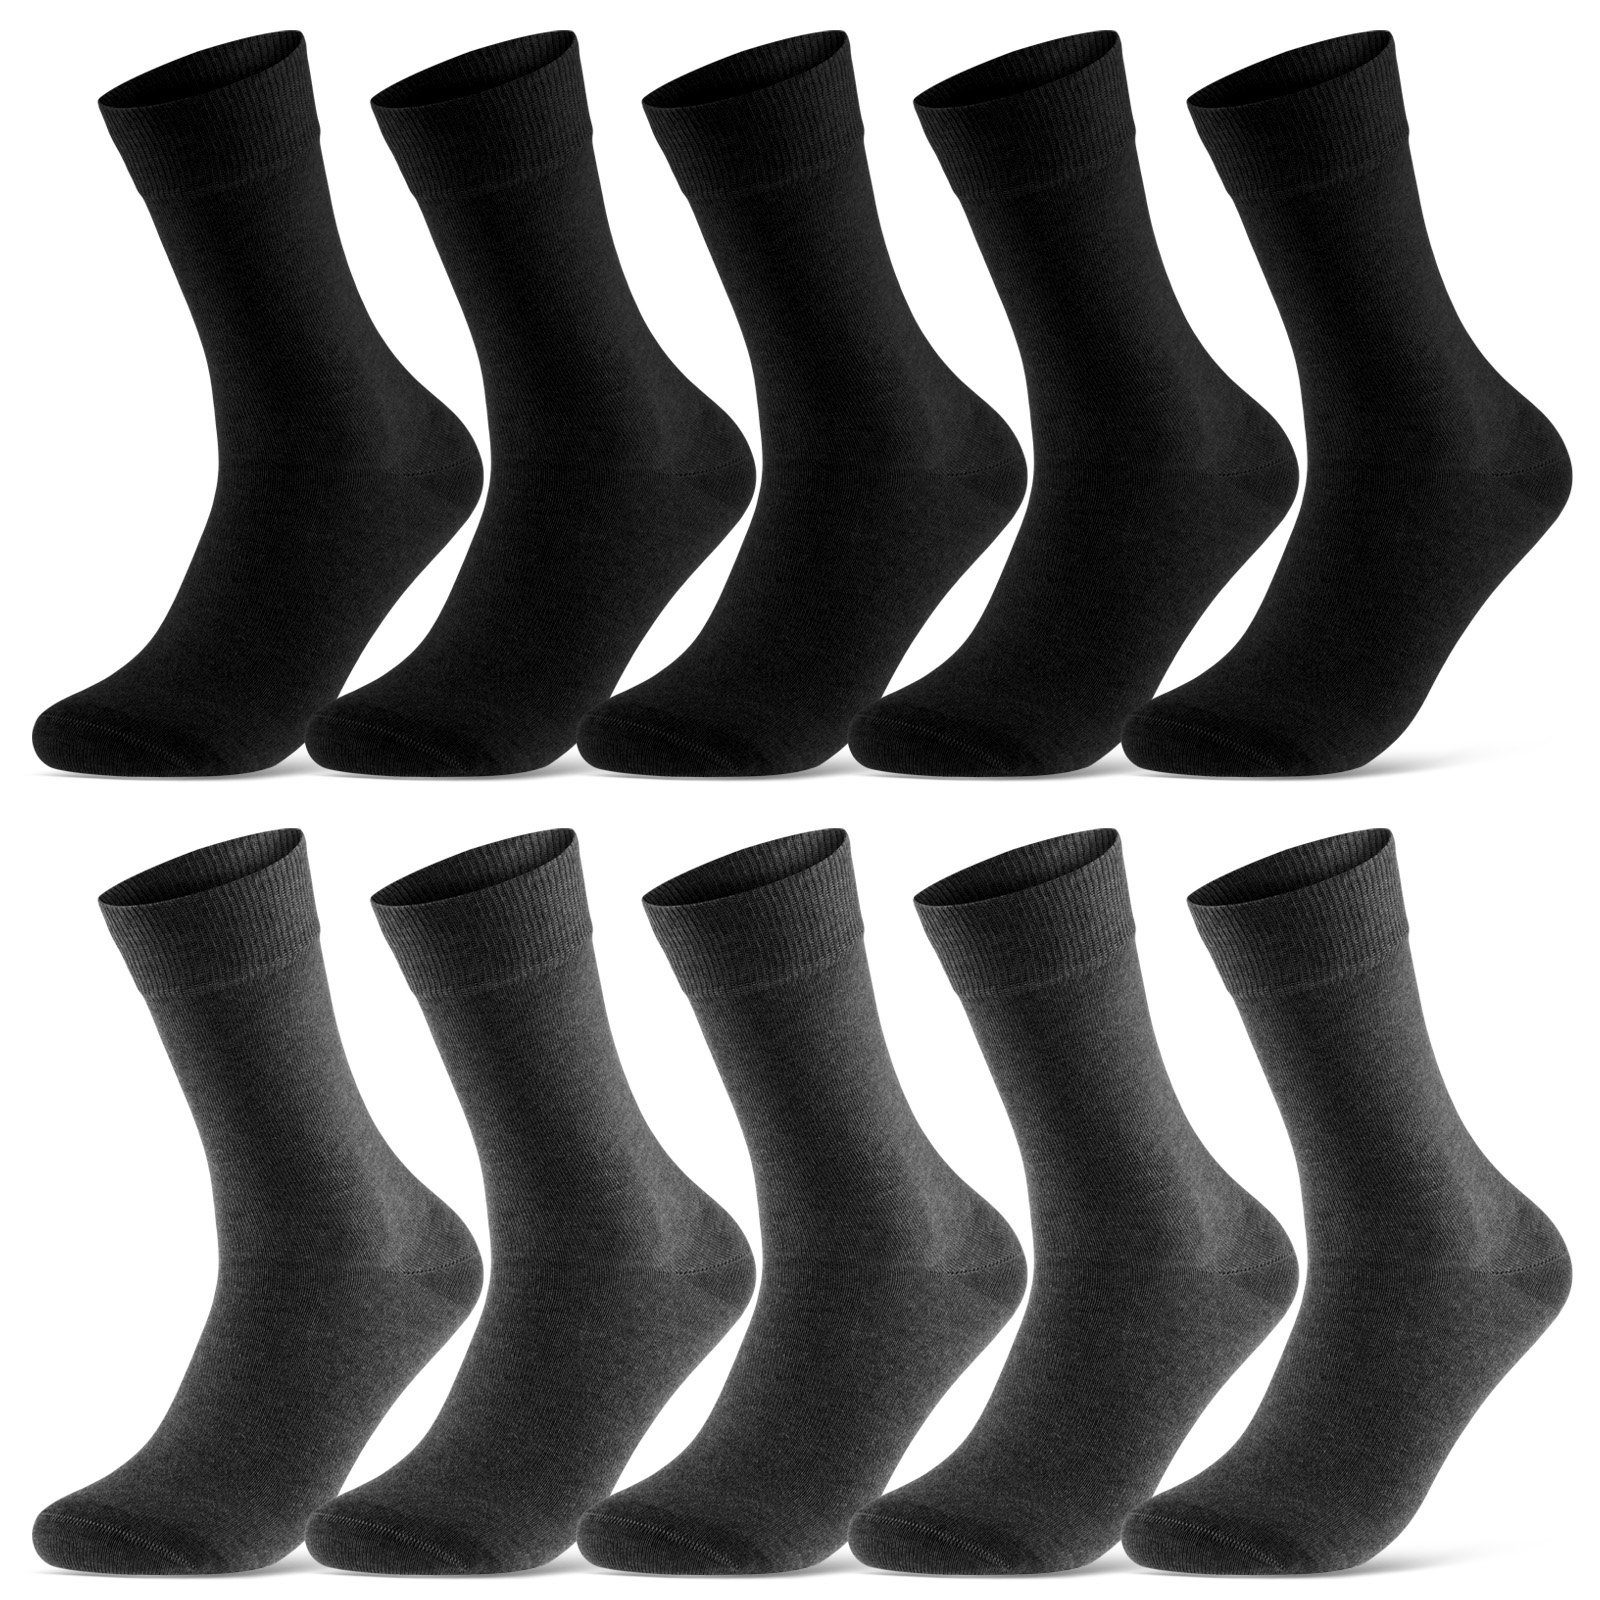 sockenkauf24 Socken 10 Paar Damen & Herren Socken Business Socken Baumwolle (Schwarz/Anthra, 35-38) mit Komfortbund (Basicline) - 70201T